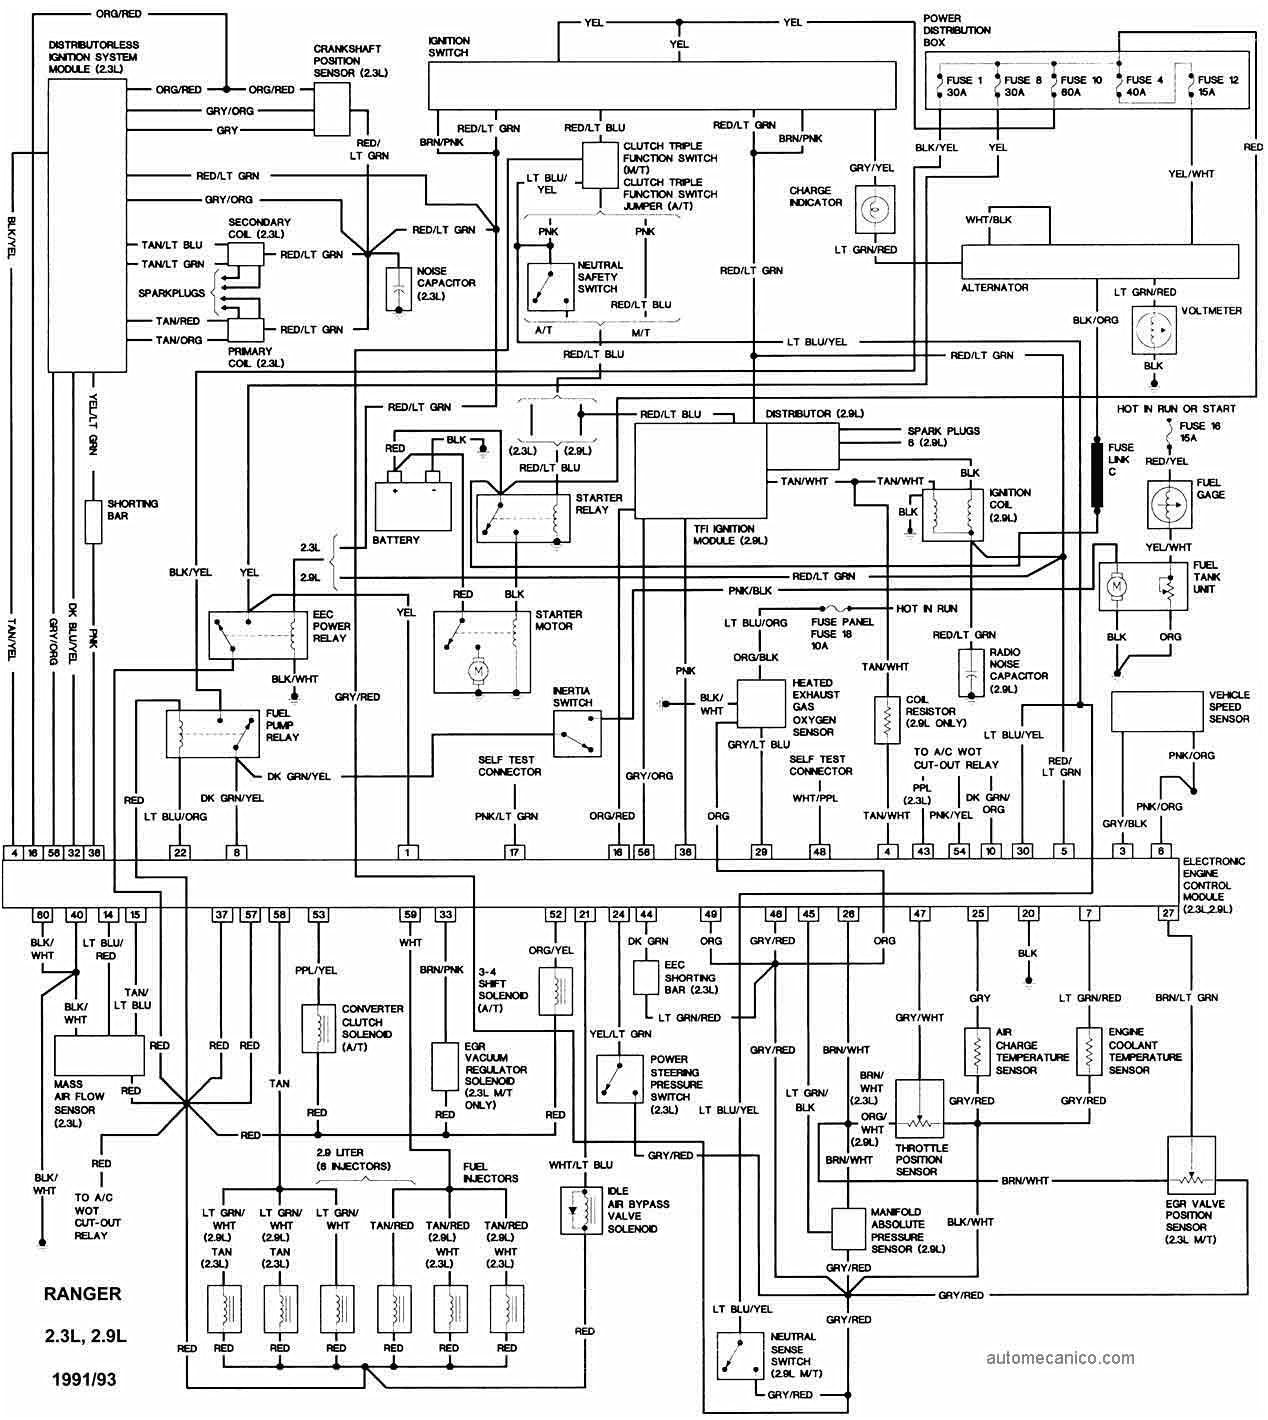 2000 ford explorer schematics electrical schematic wiring diagram 2000 ford explorer electrical schematics wiring diagram files